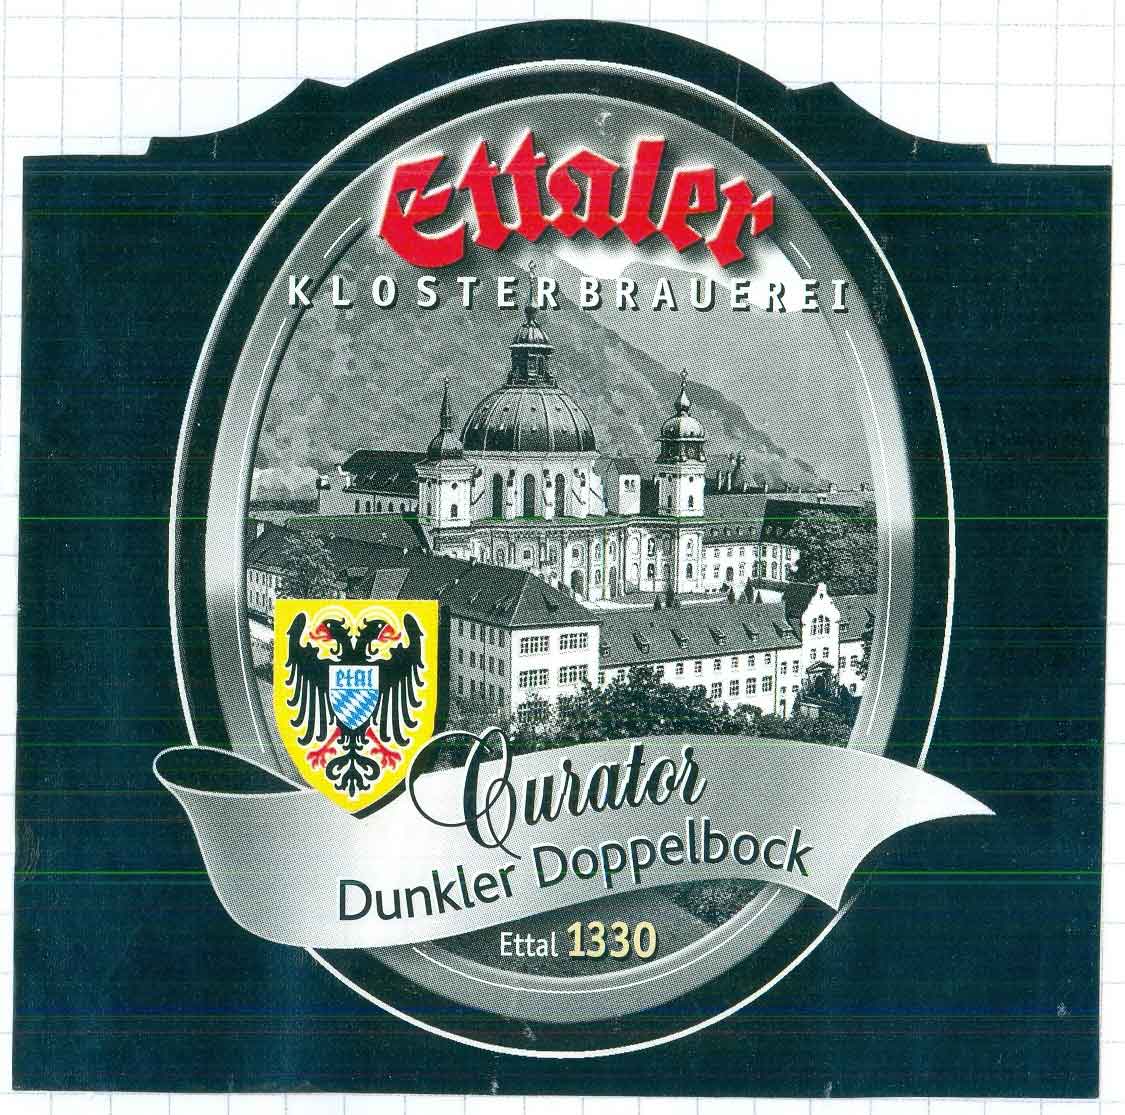 Ettaler-Curator-Dunkler-Doppelbock2012-10-25050.jpg